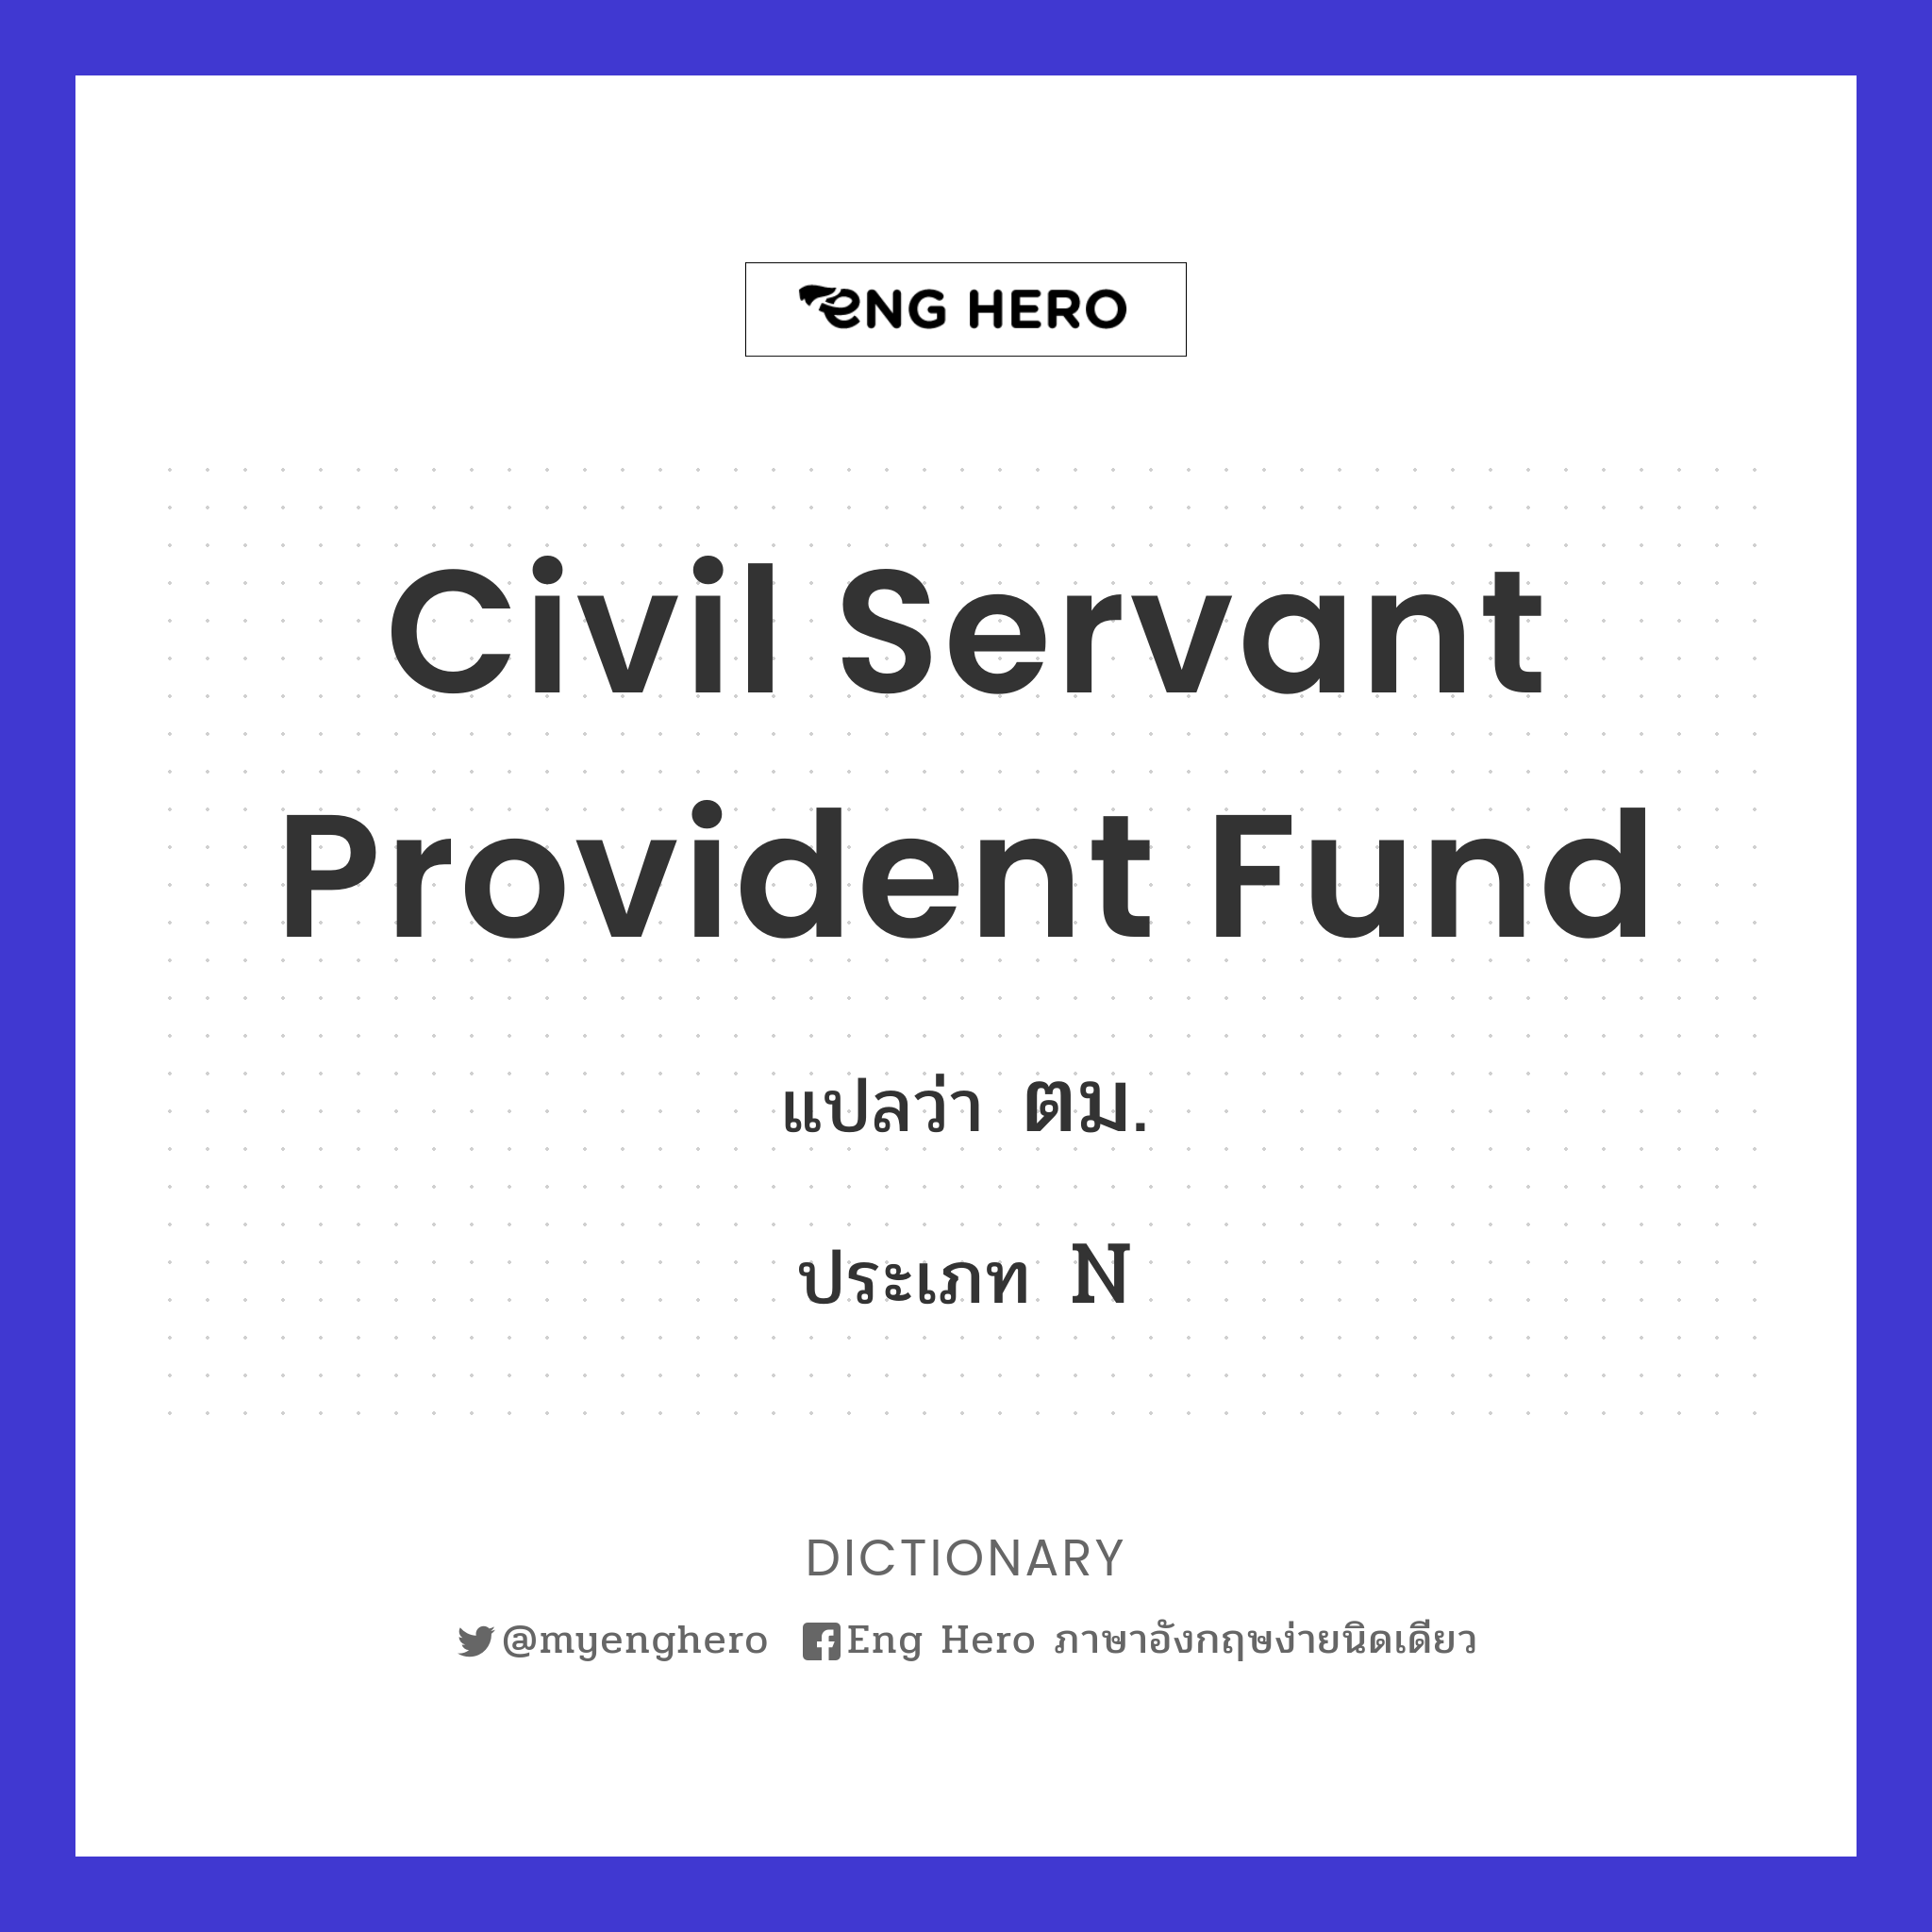 Civil Servant Provident Fund